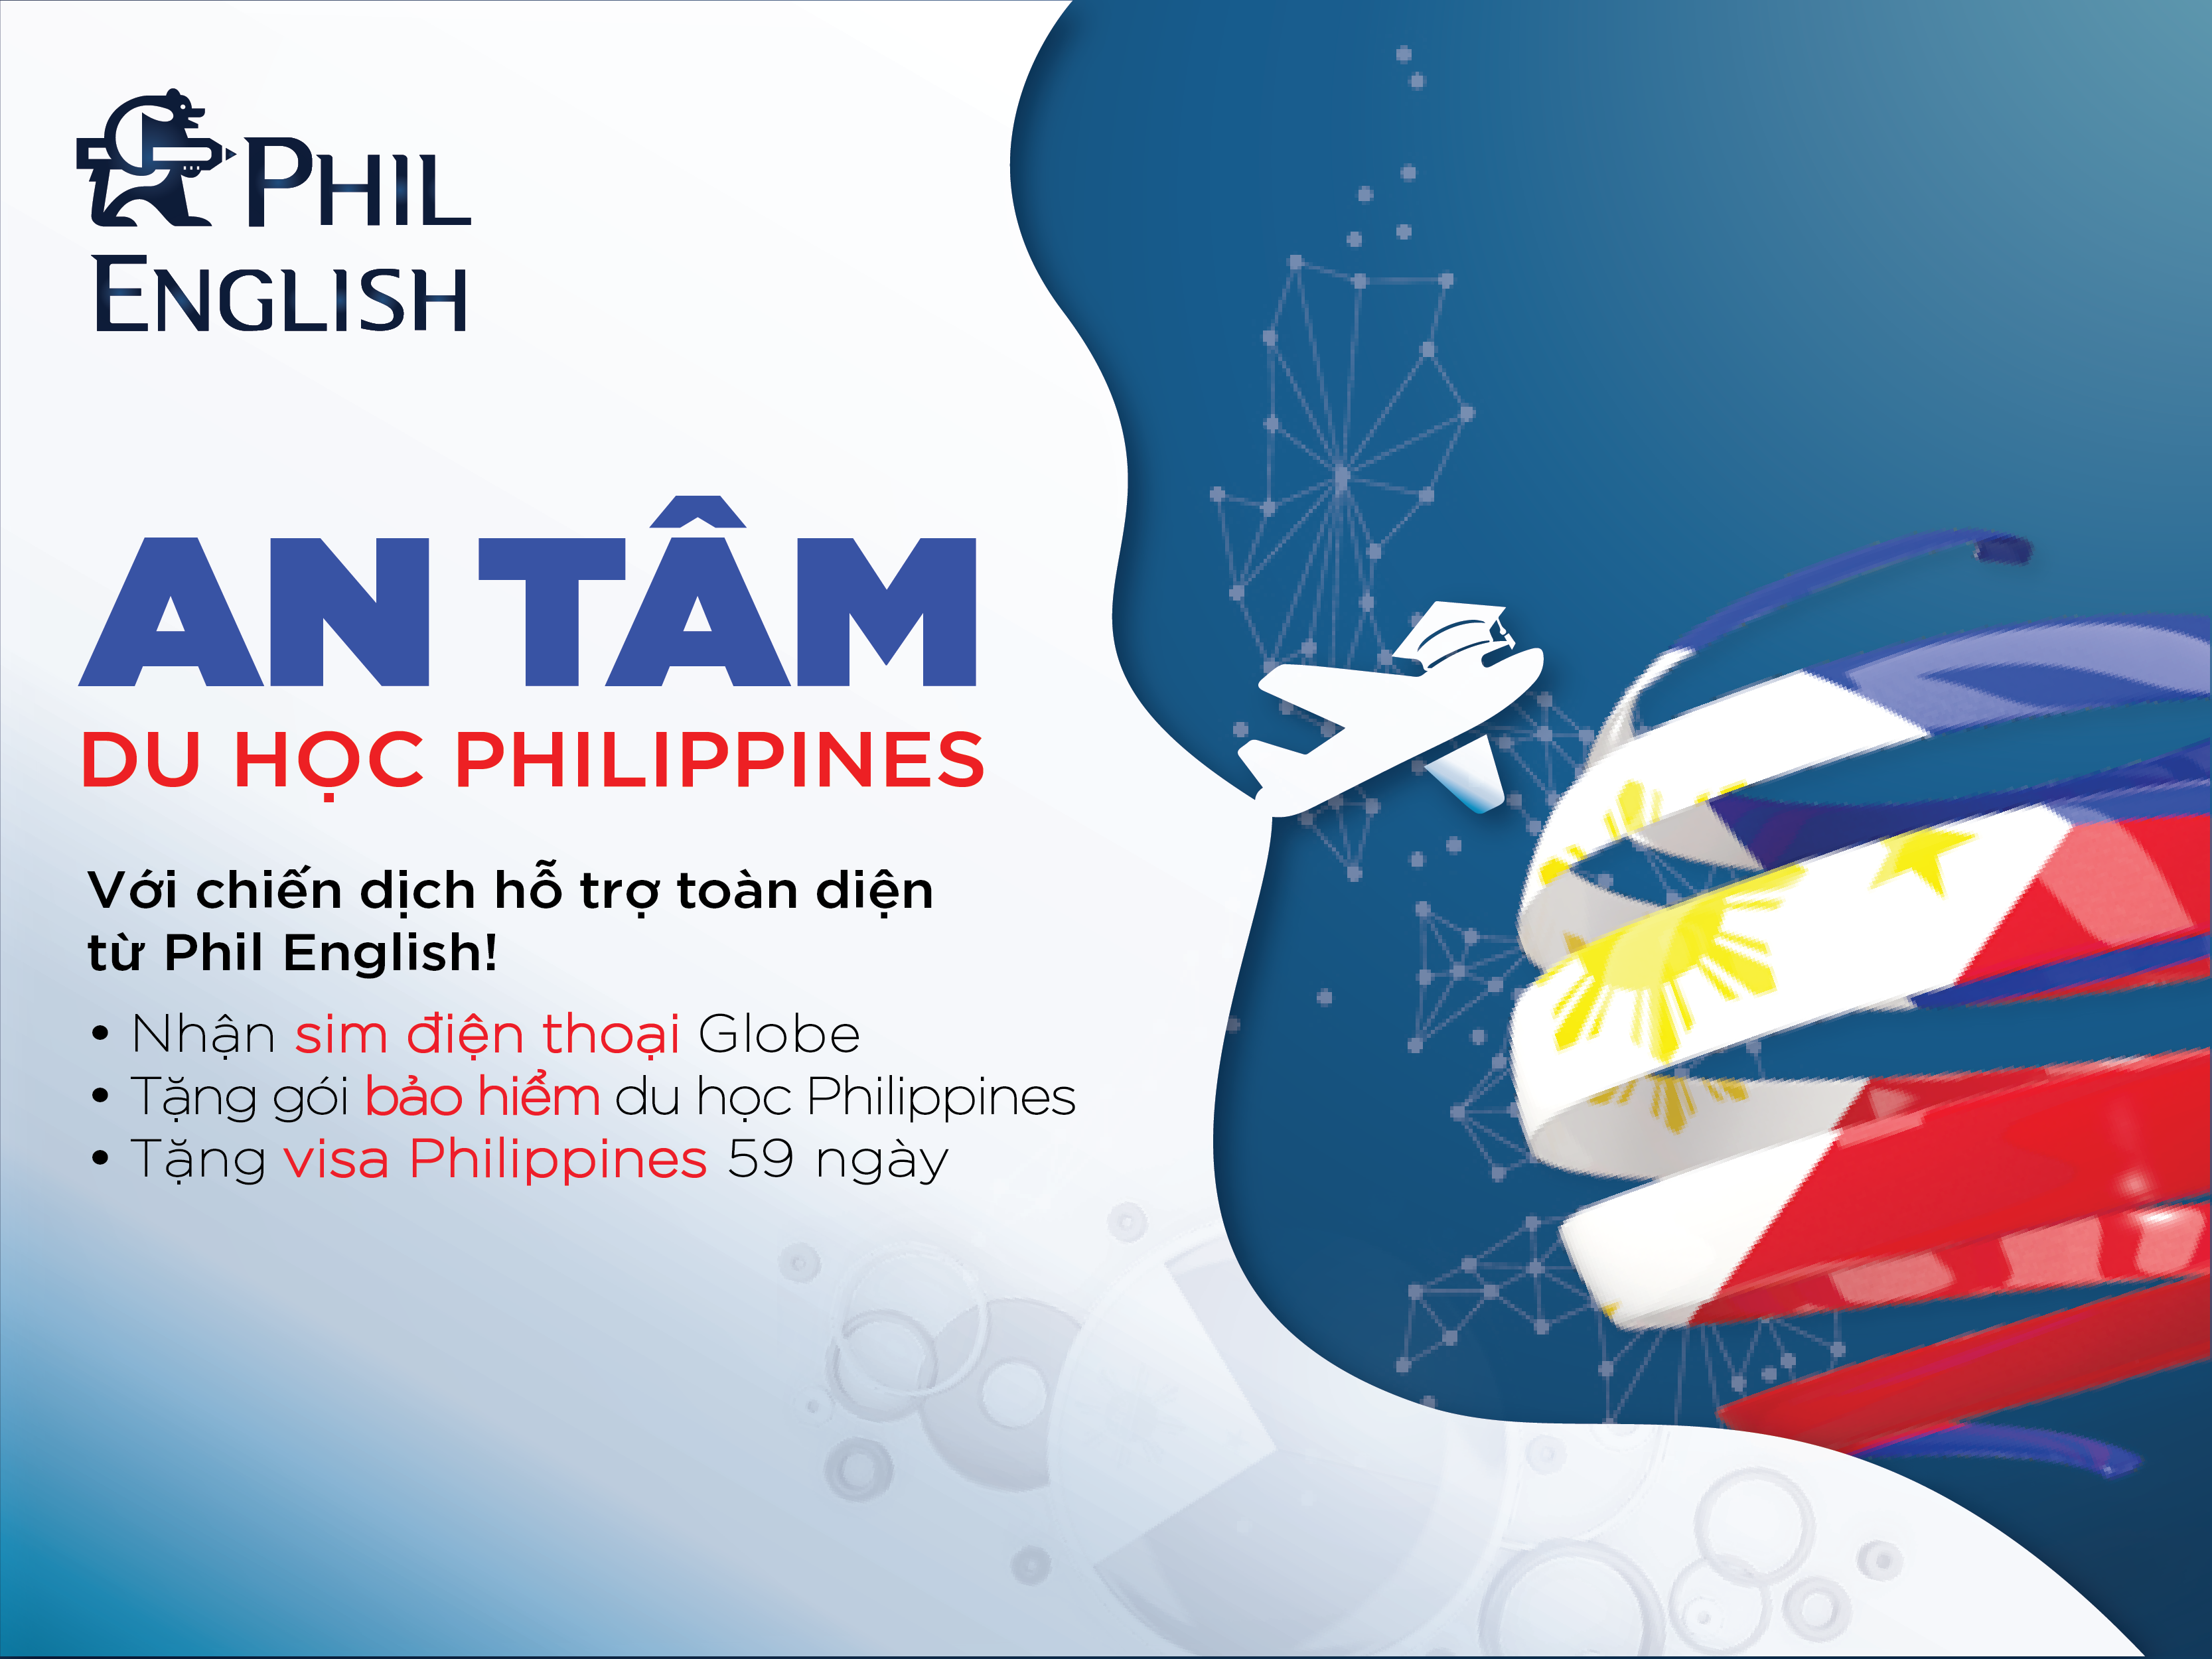 An tâm du học Philippines với hỗ trợ toàn diện từ Phil English